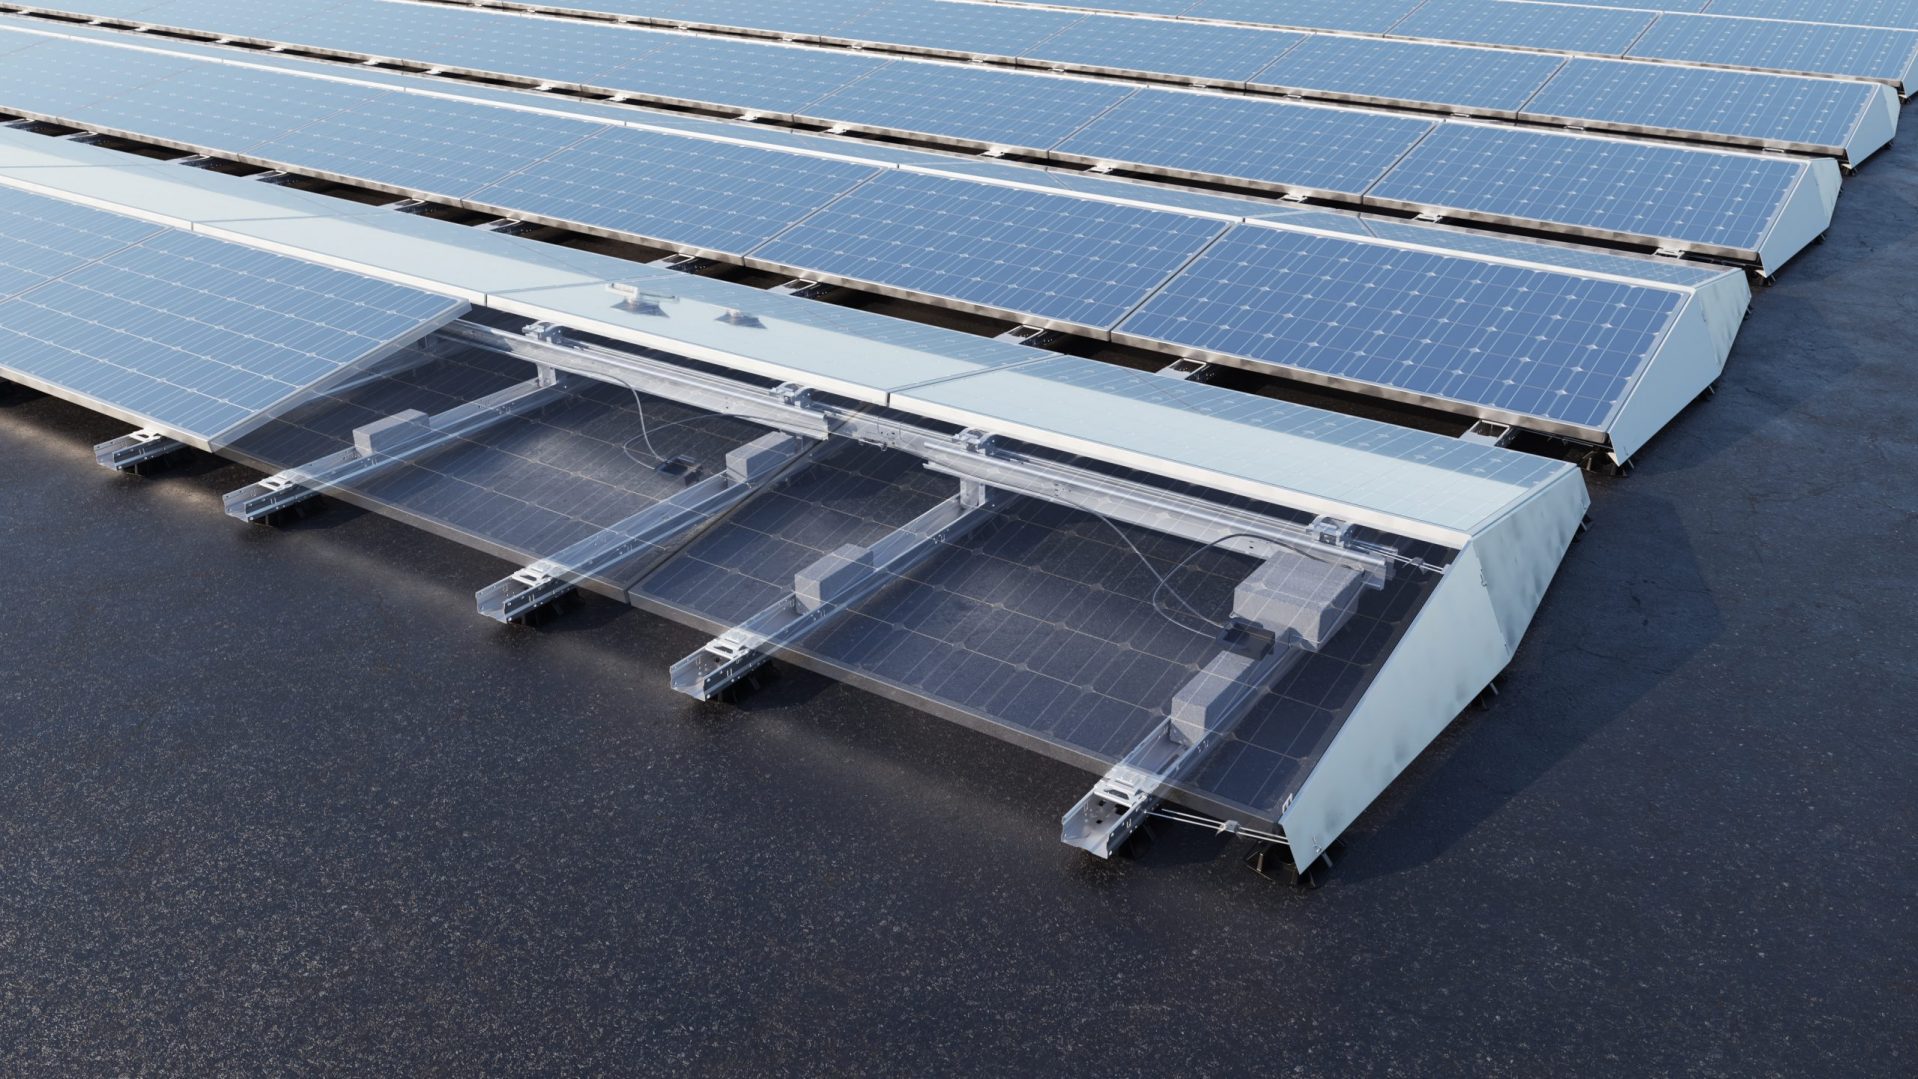 Comment installer des panneaux solaires ?